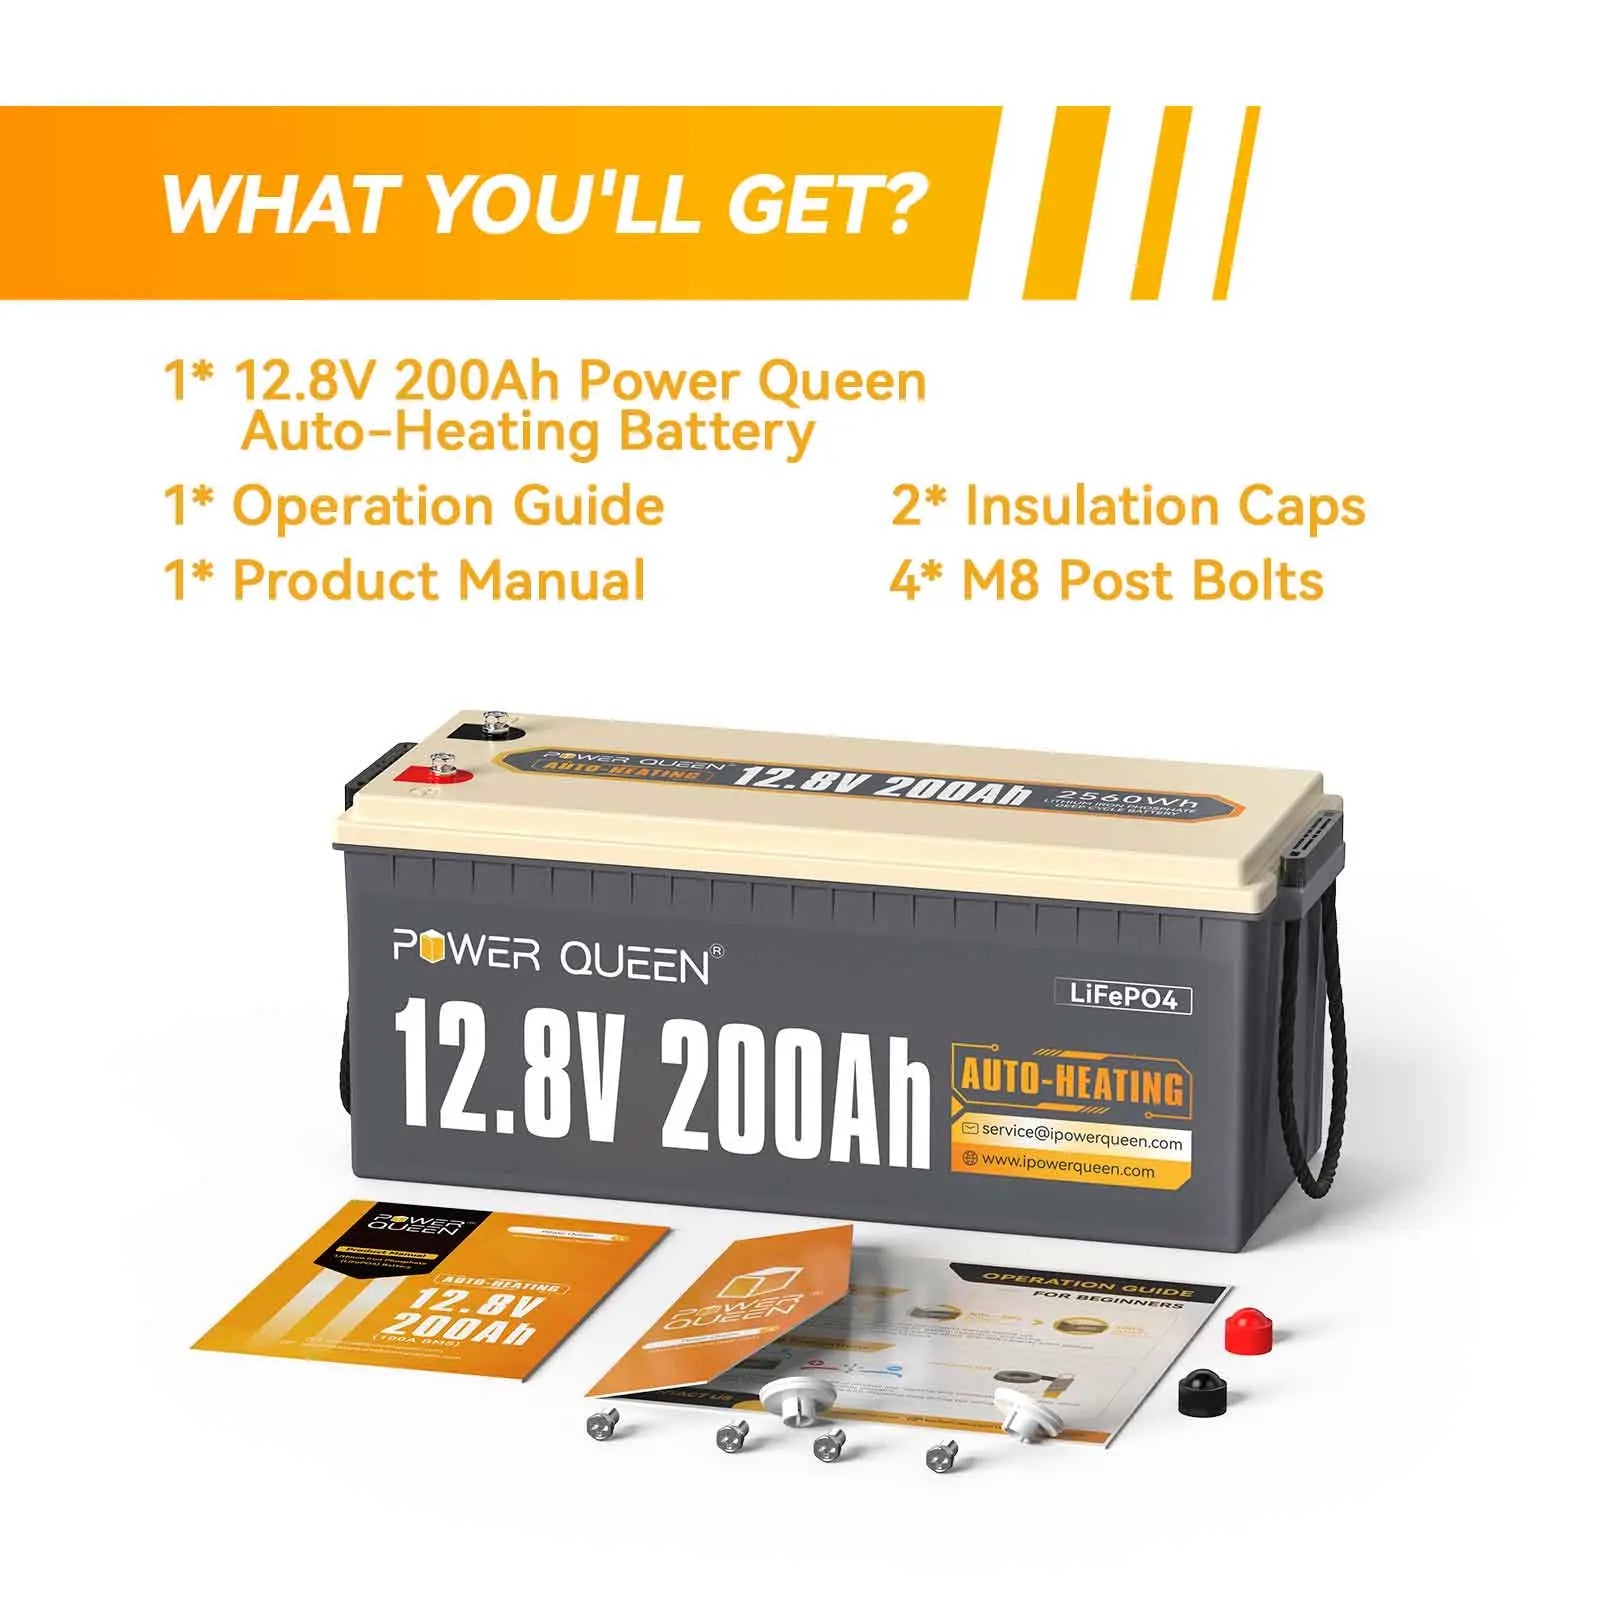 Power Queen 12.8V 200Ah Self-Heating Lithium Battery, Built-in 100A BMS Power Queen